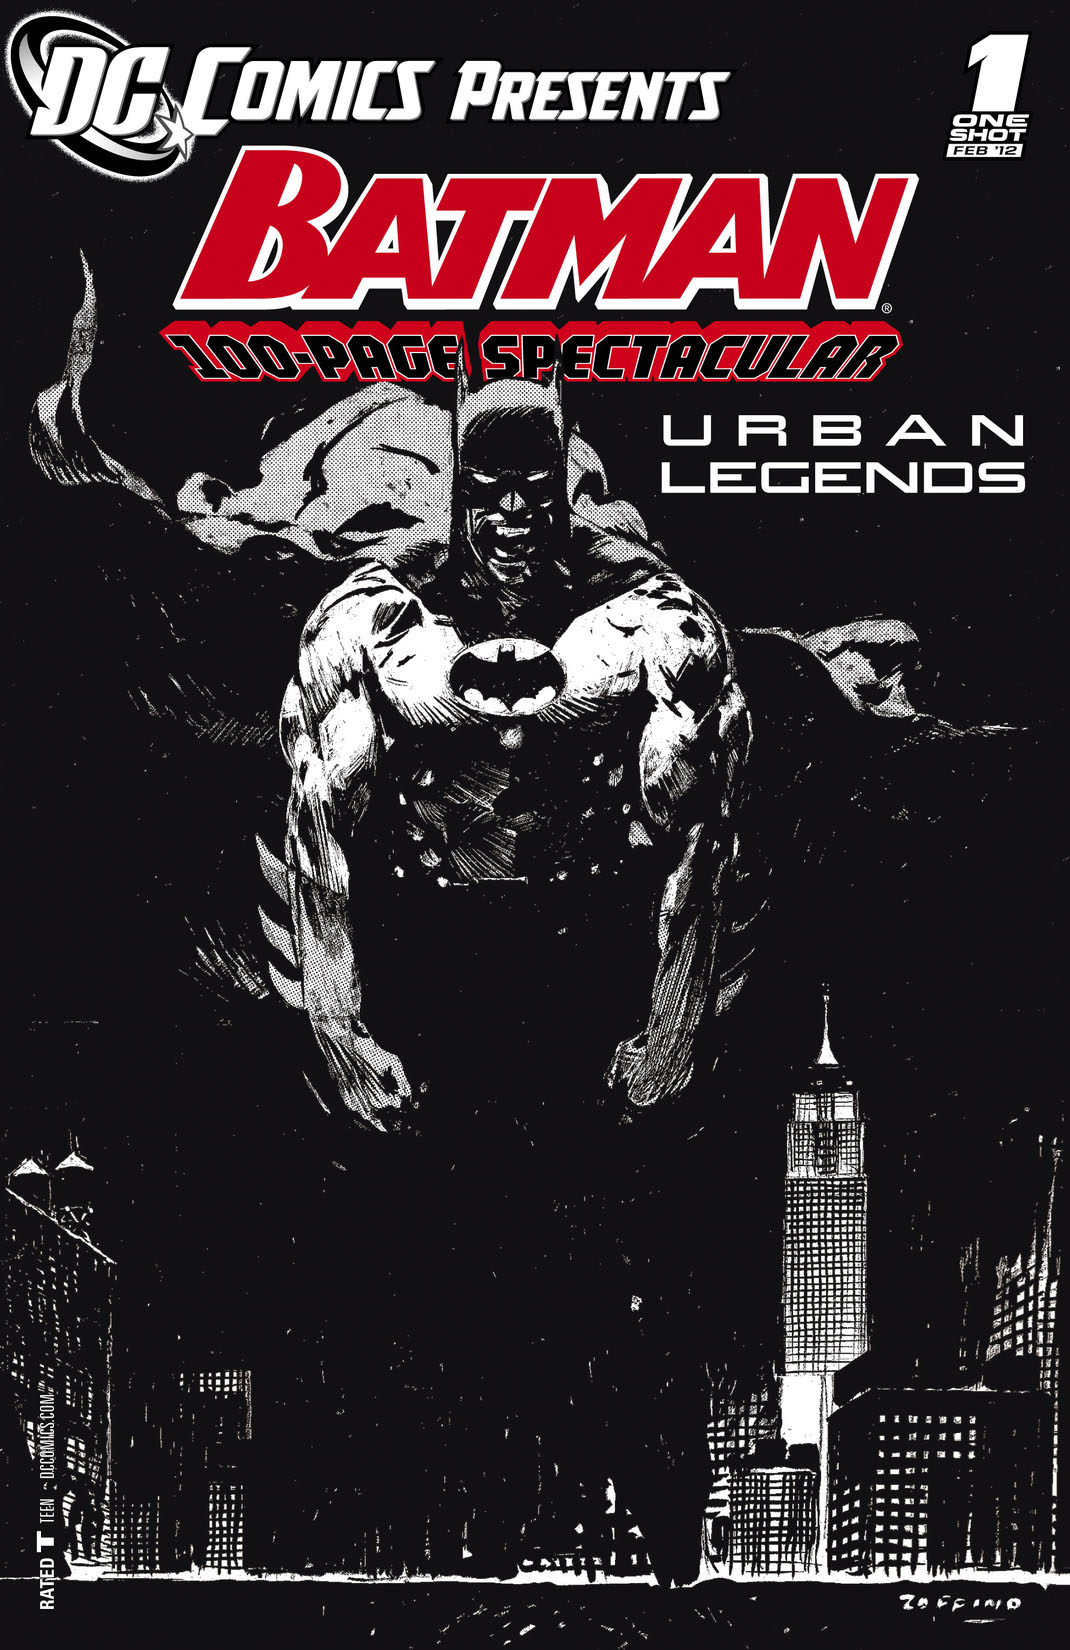 DC Comics Presents: Batman: Urban Legends (2011-) #1 preview images